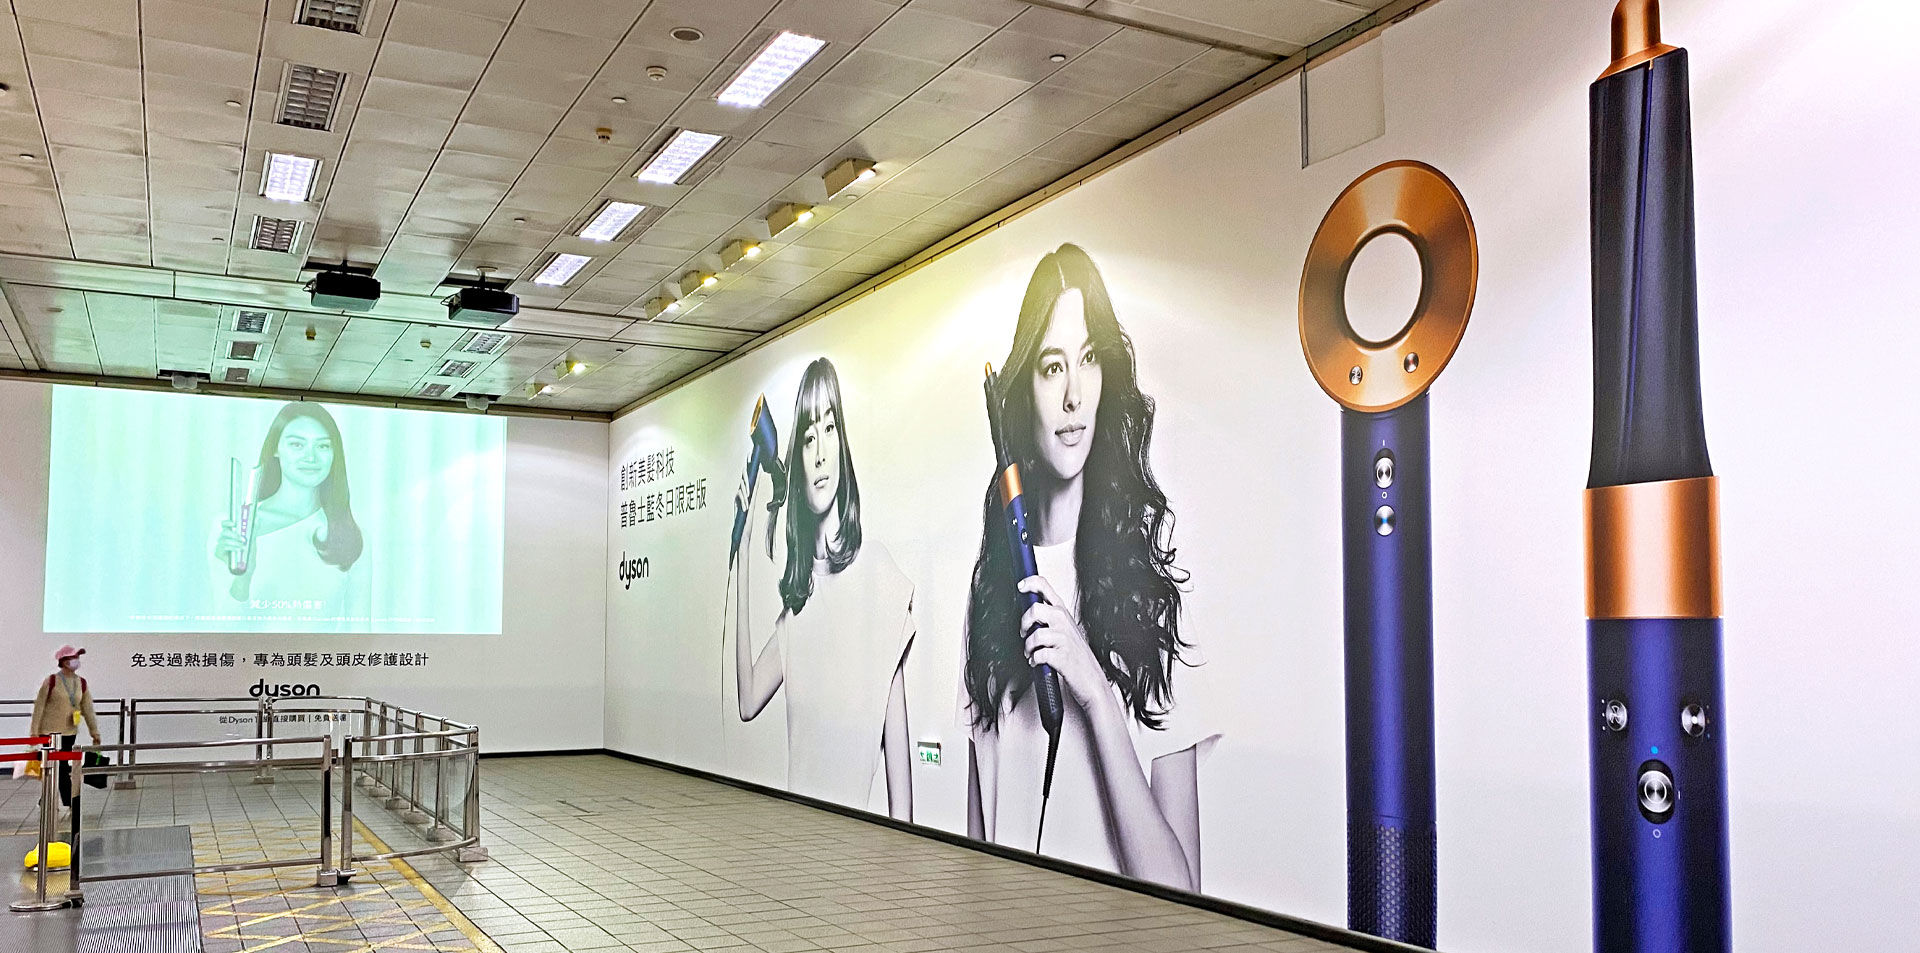 台北捷運壁貼廣告案例，dyson